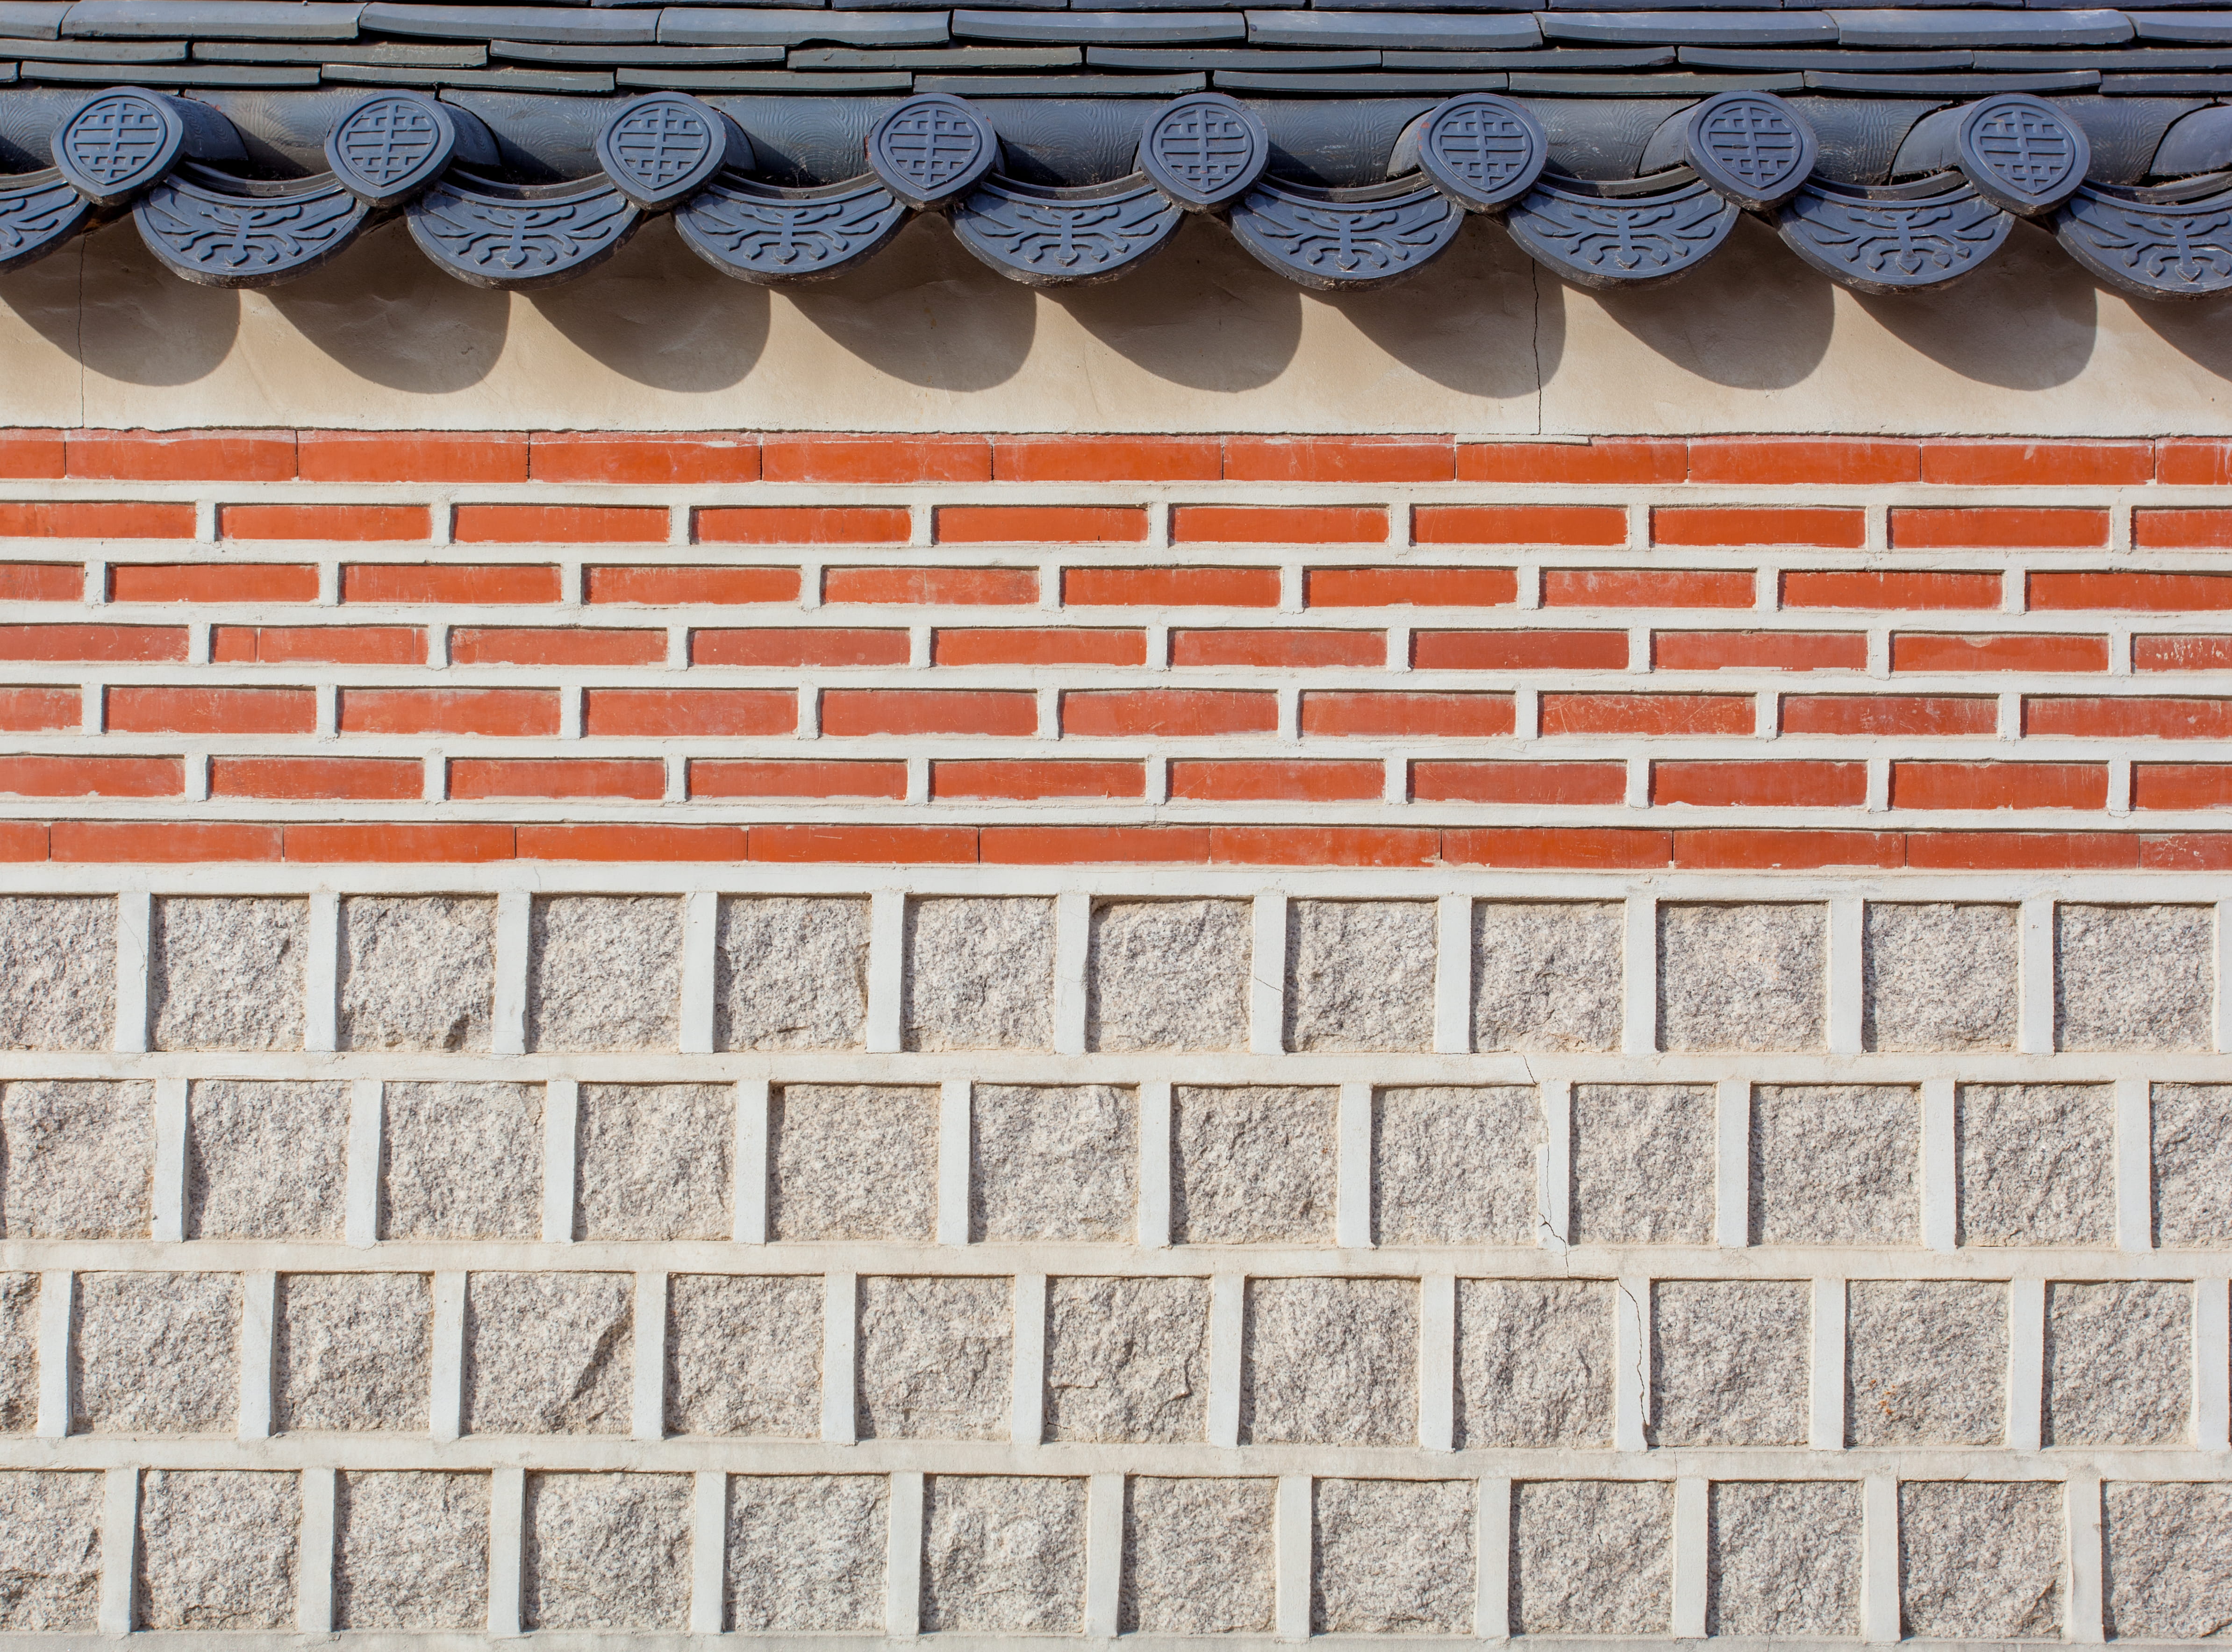 gray and brown wall bricks, roof, gyeongbokgung palace, south korea